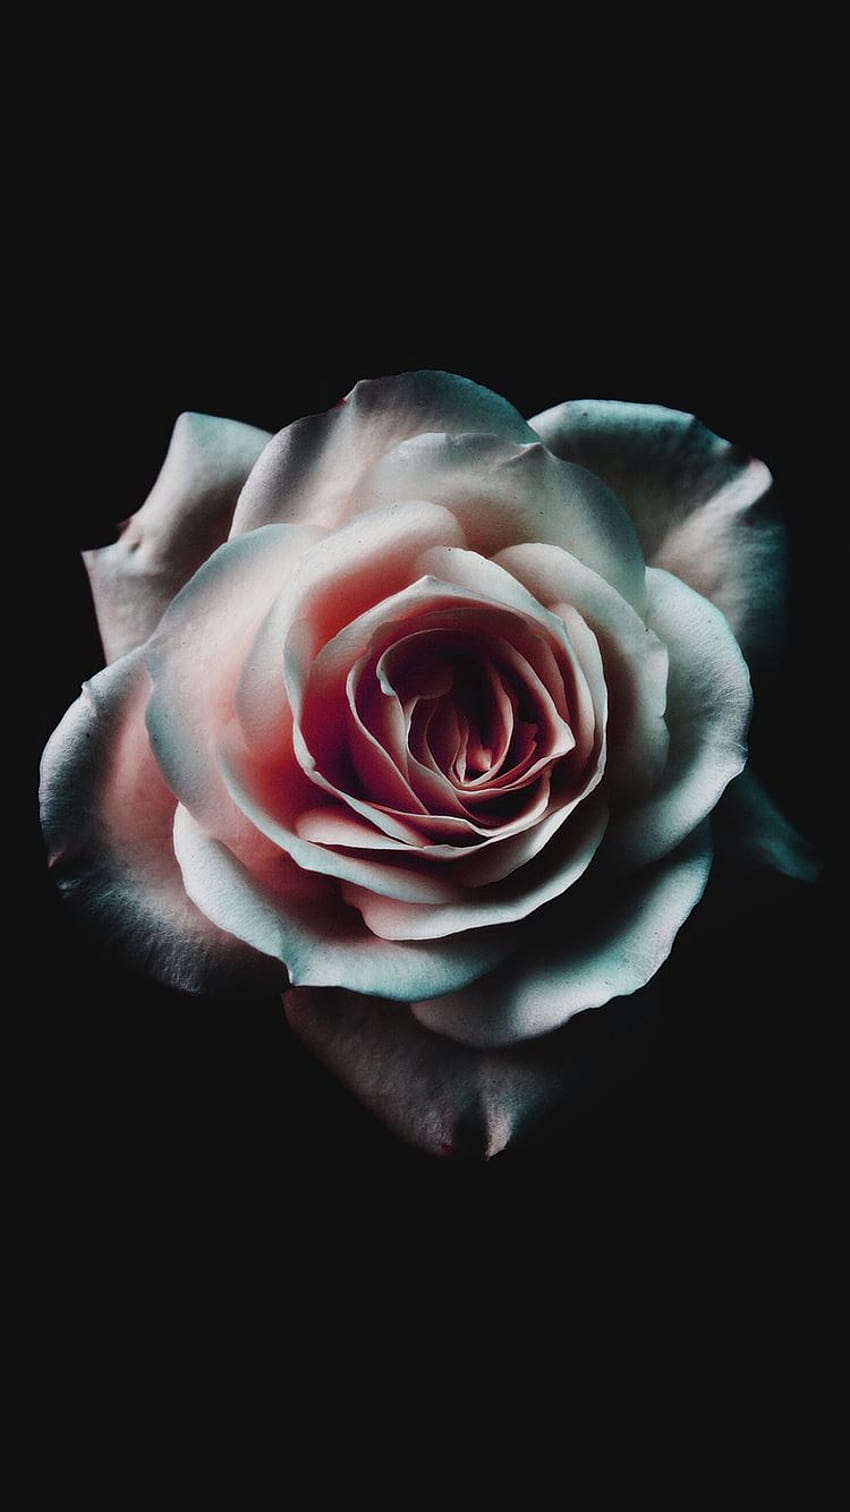 Hoa hồng chính là biểu tượng của tình yêu, sự ngọt ngào và lãng mạn. Hãy cùng xem hình ảnh đầy màu sắc của hoa hồng để cảm nhận sự đẹp đẽ của chúng và lan tỏa tình yêu đến tất cả mọi người.